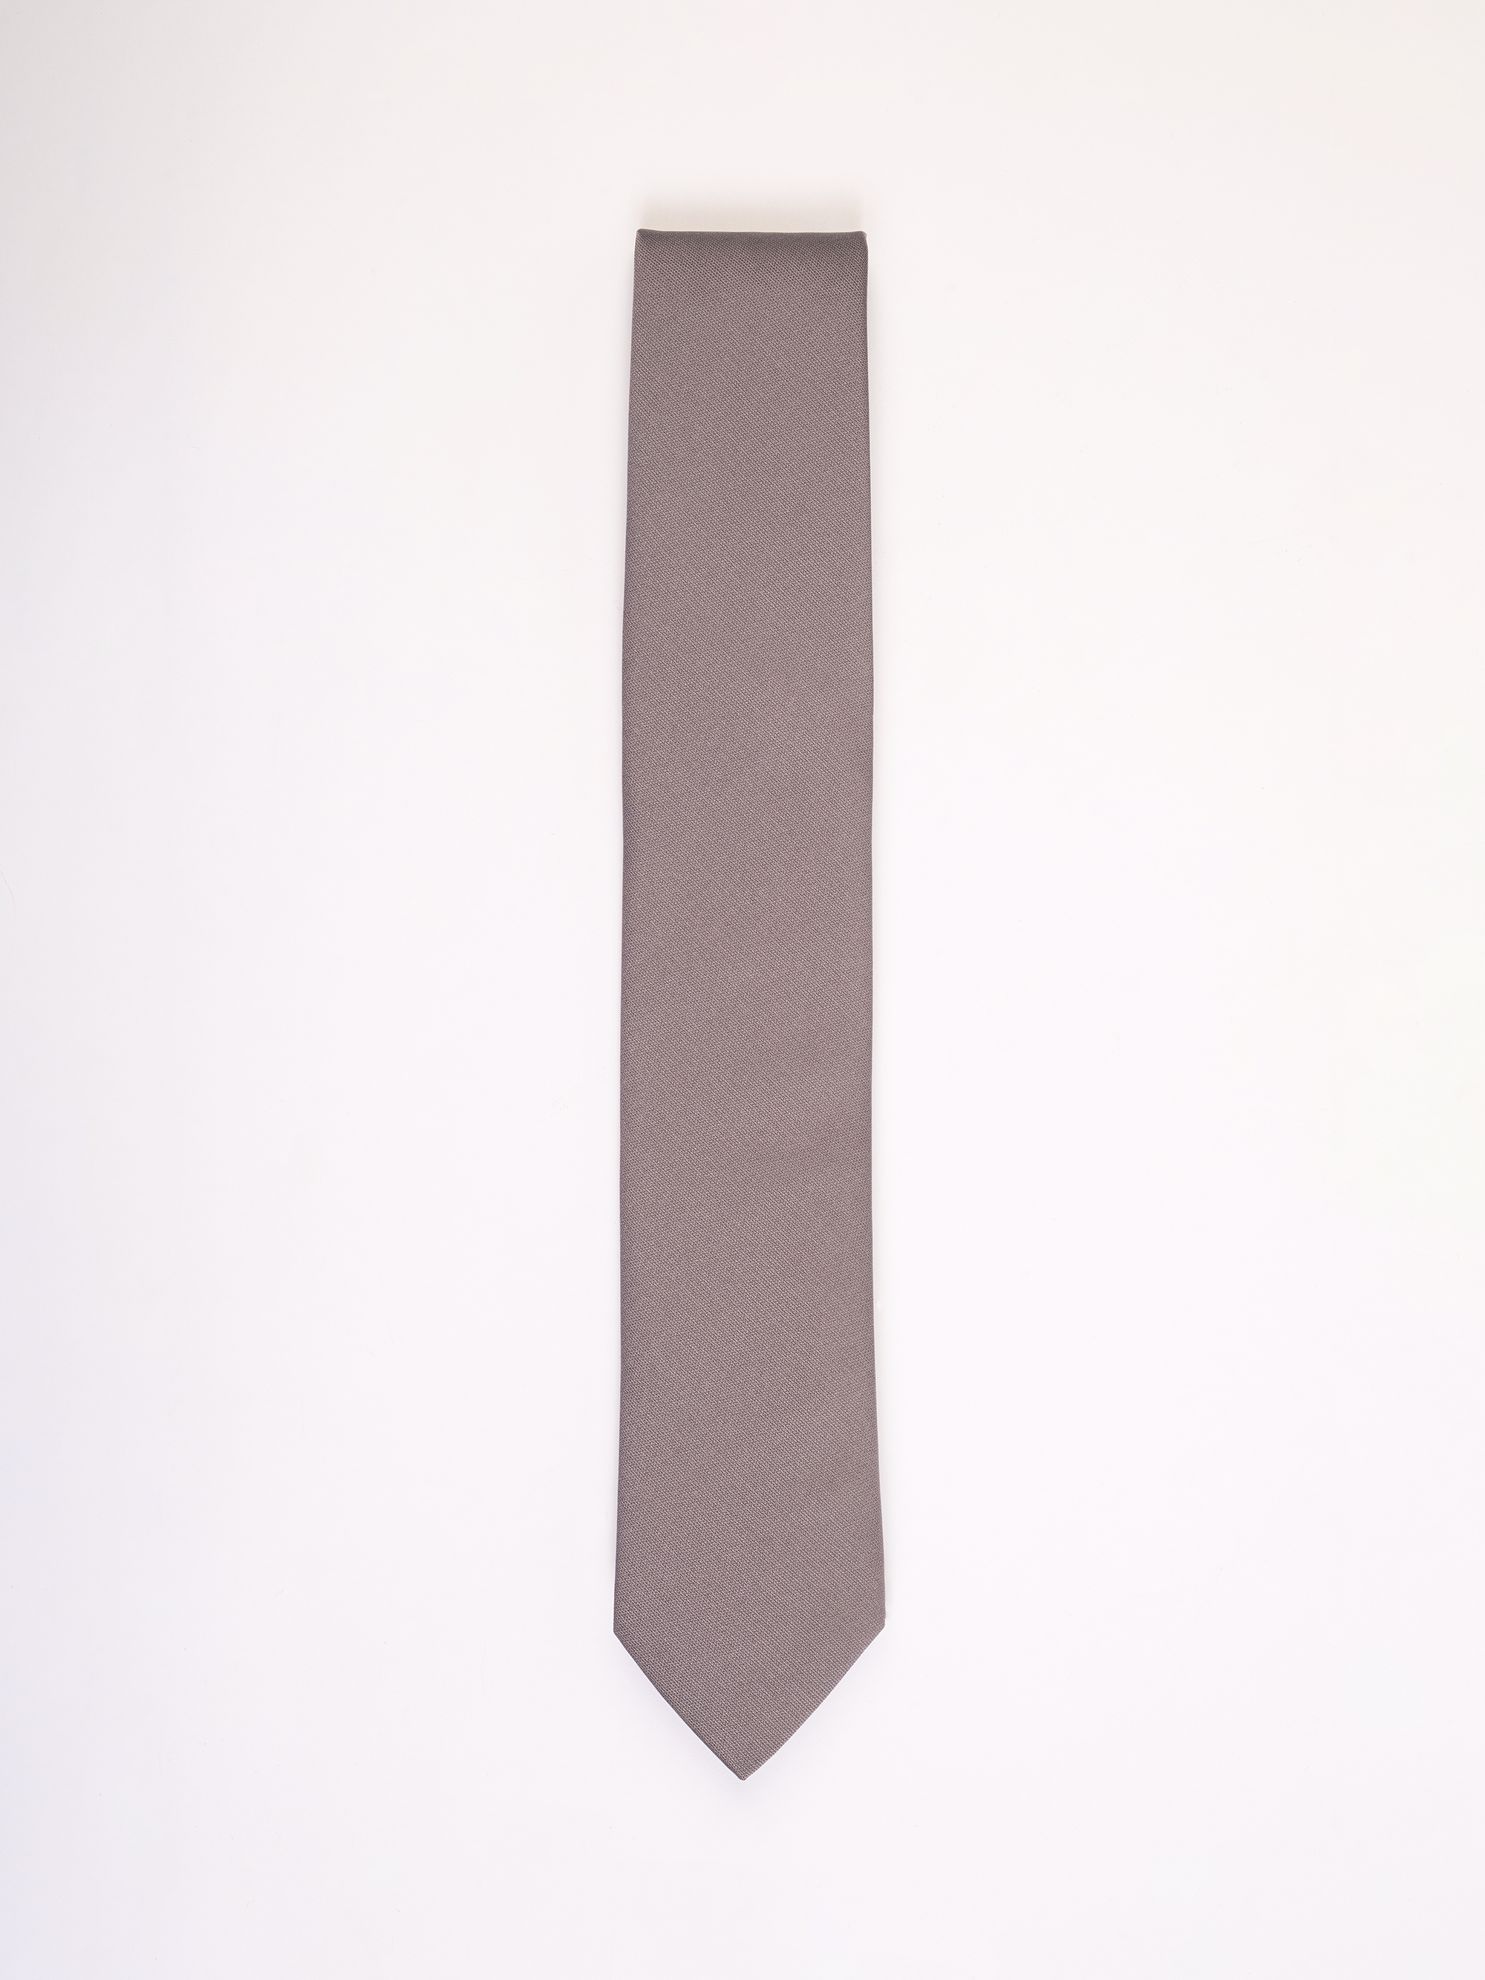 Karaca Erkek Kravat-Gri. ürün görseli